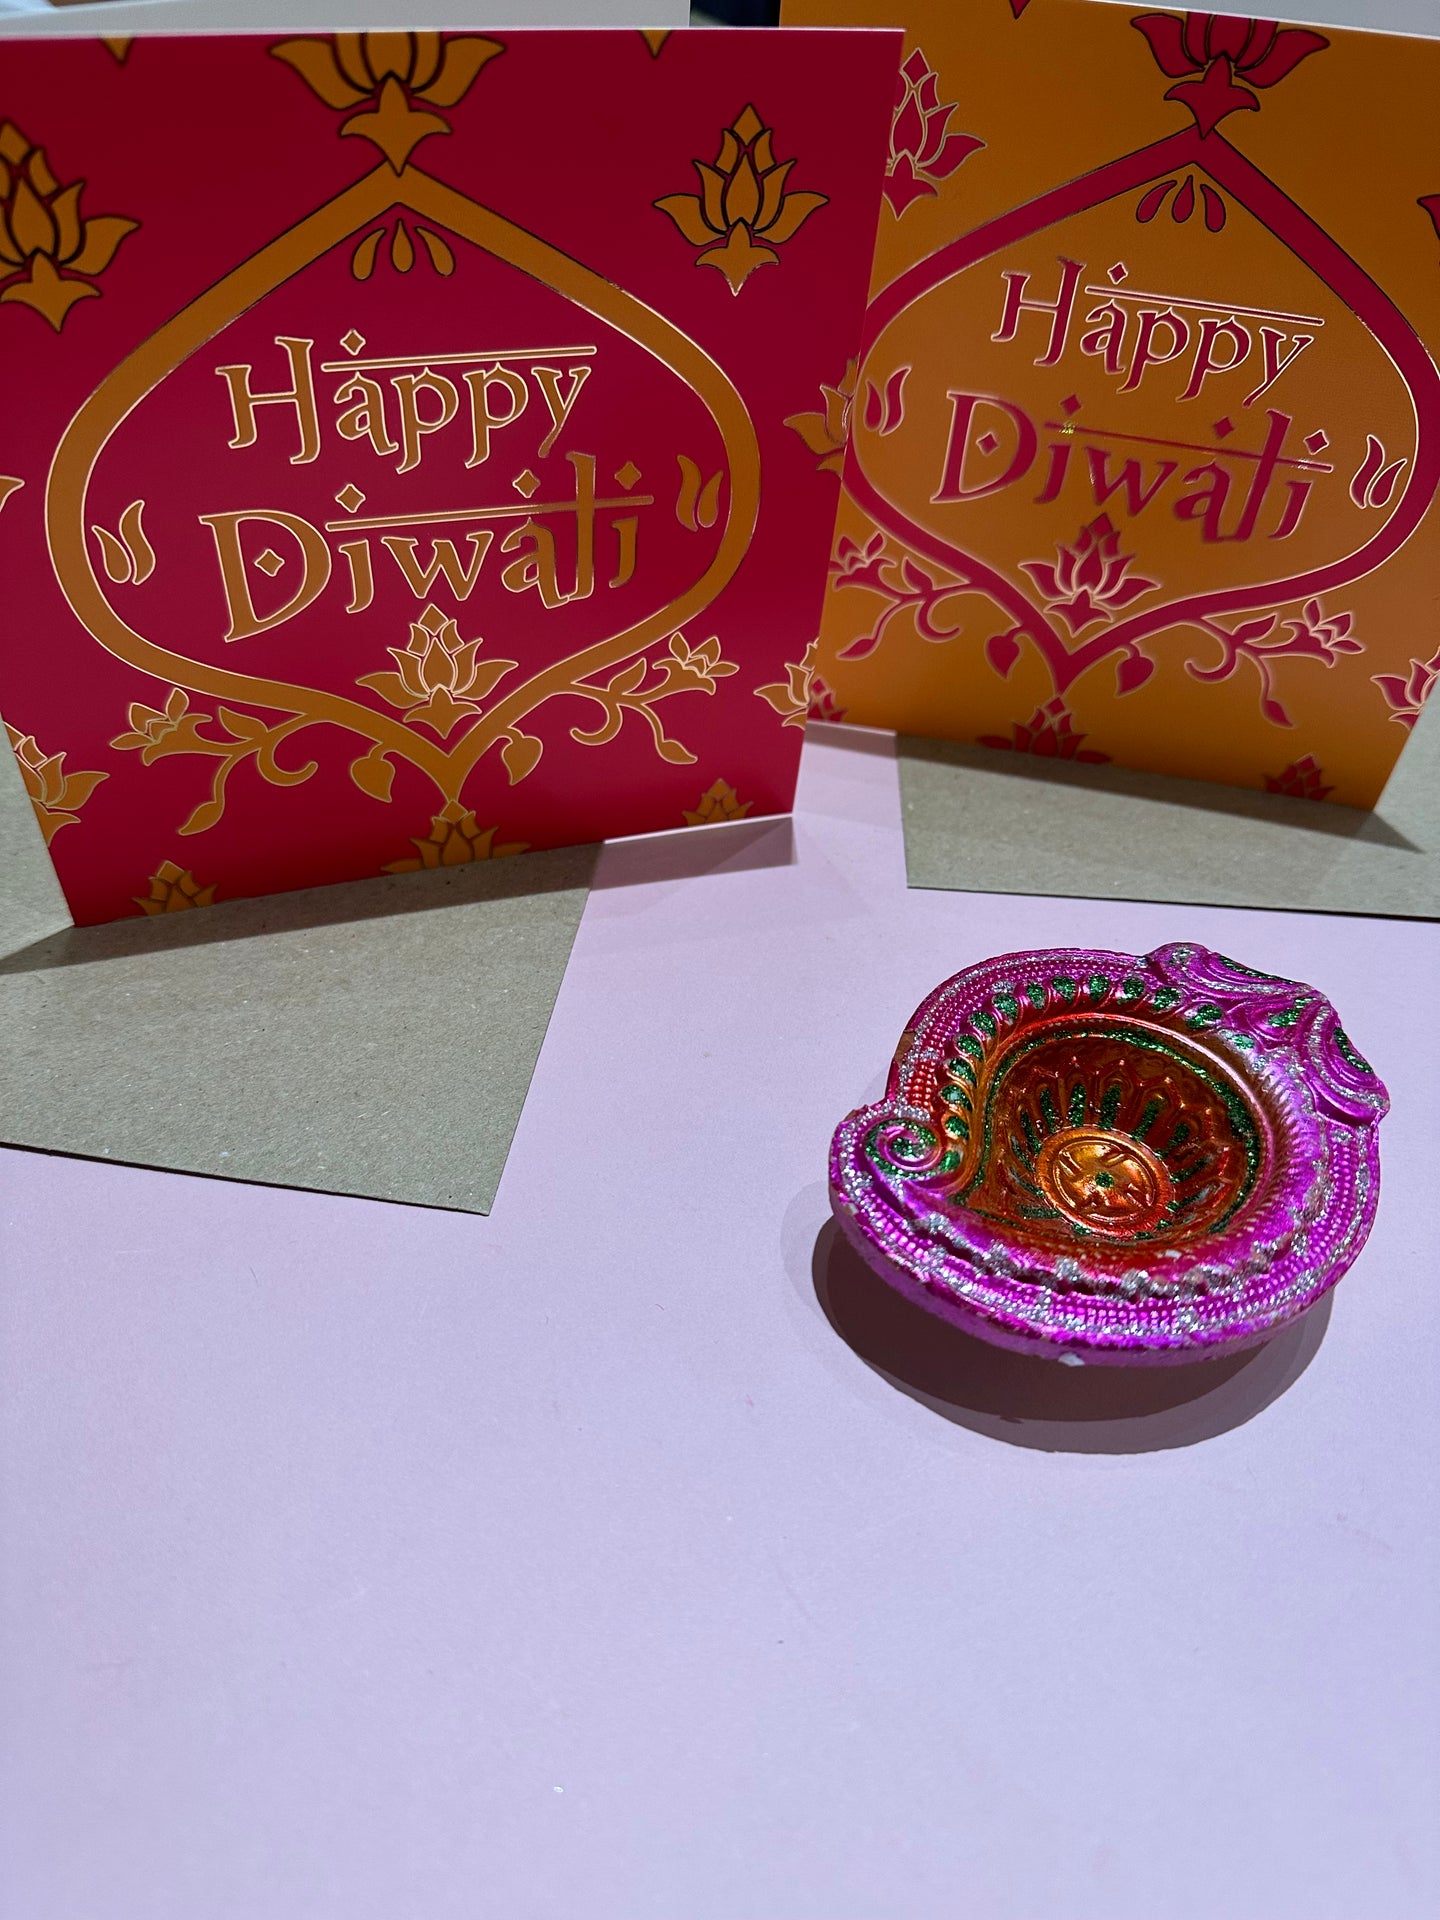 Pack of 2 Foil-Printed Diwali Greeting Card with Lotus Design